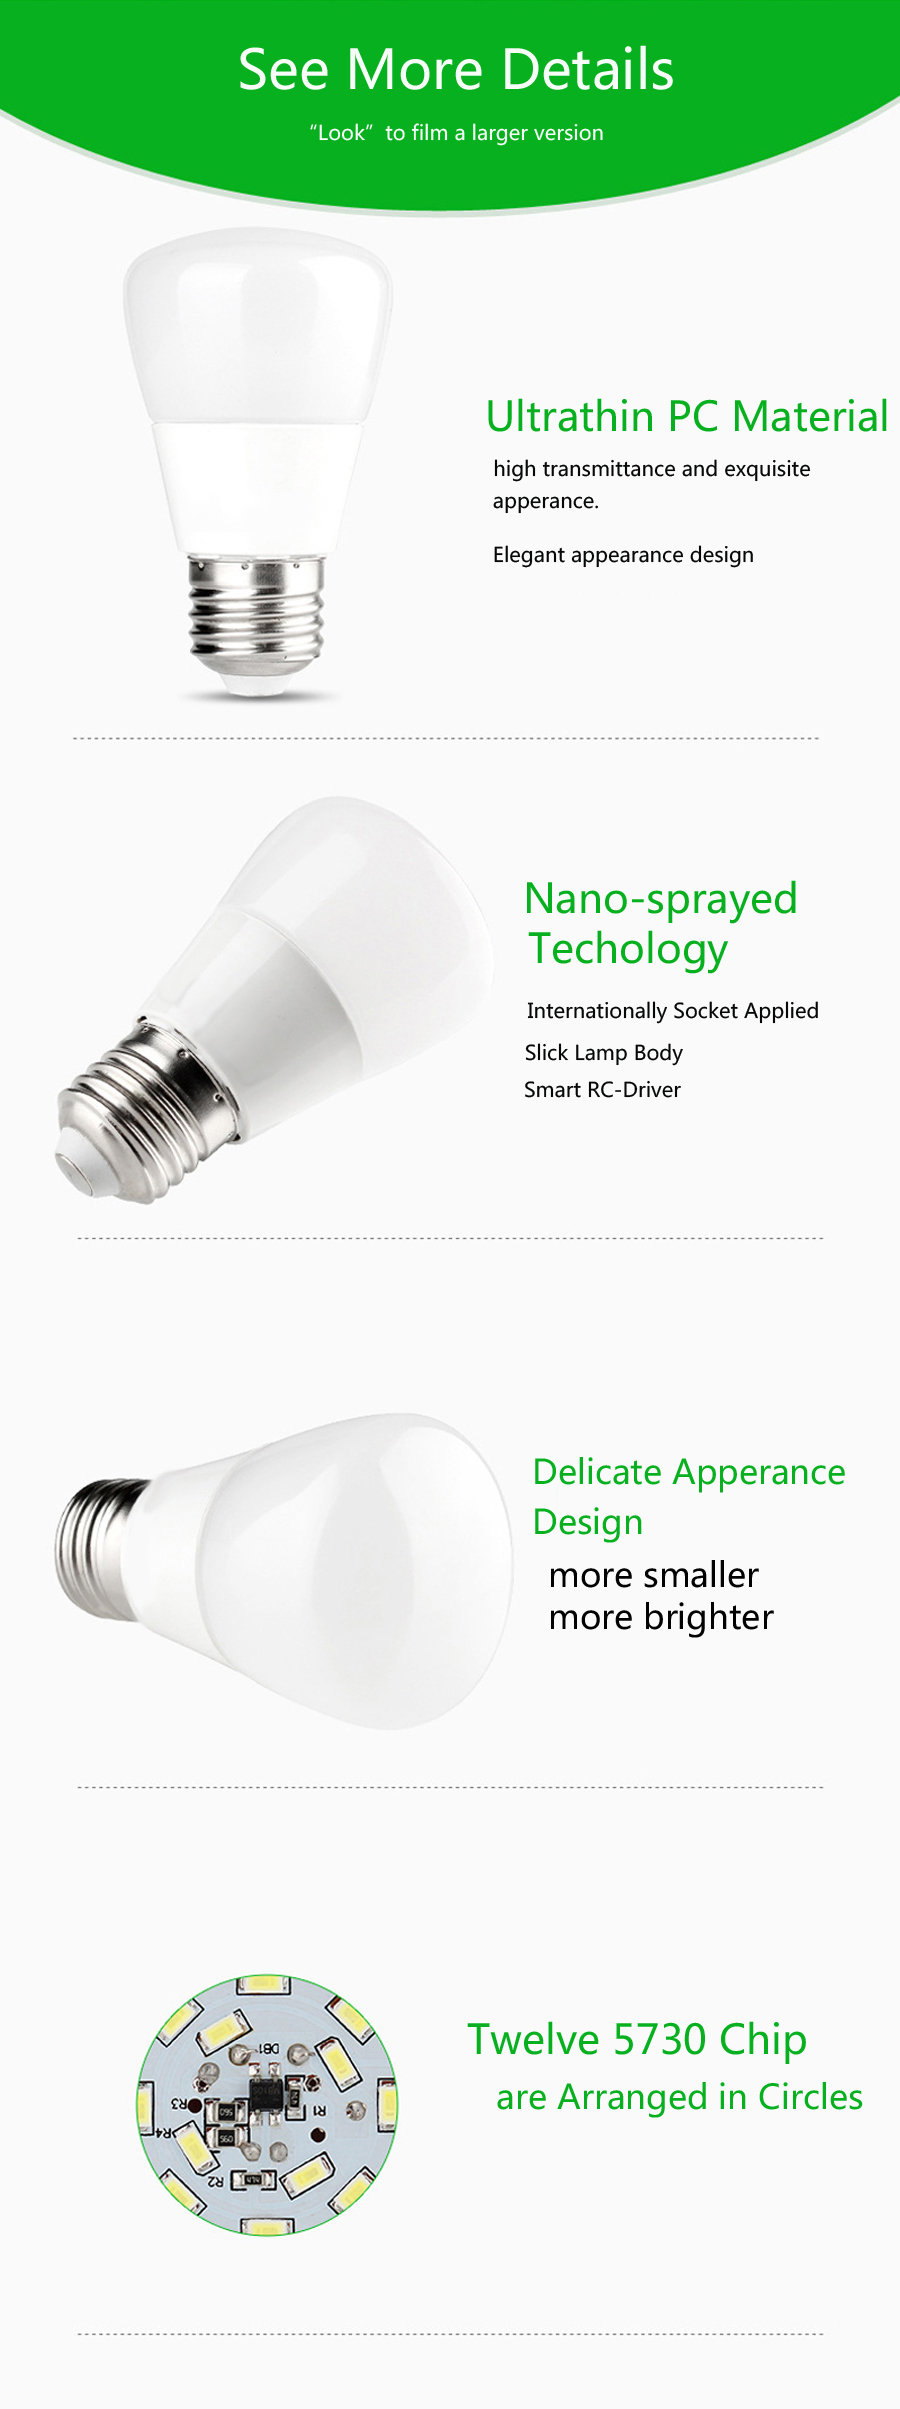 ZX-Newest-E27-5W-SMD-5730-LED-Pure-White-Warm-White-550Lm-Glaze-Light-Lamp-Bulb-AC85-265V-1085728-5